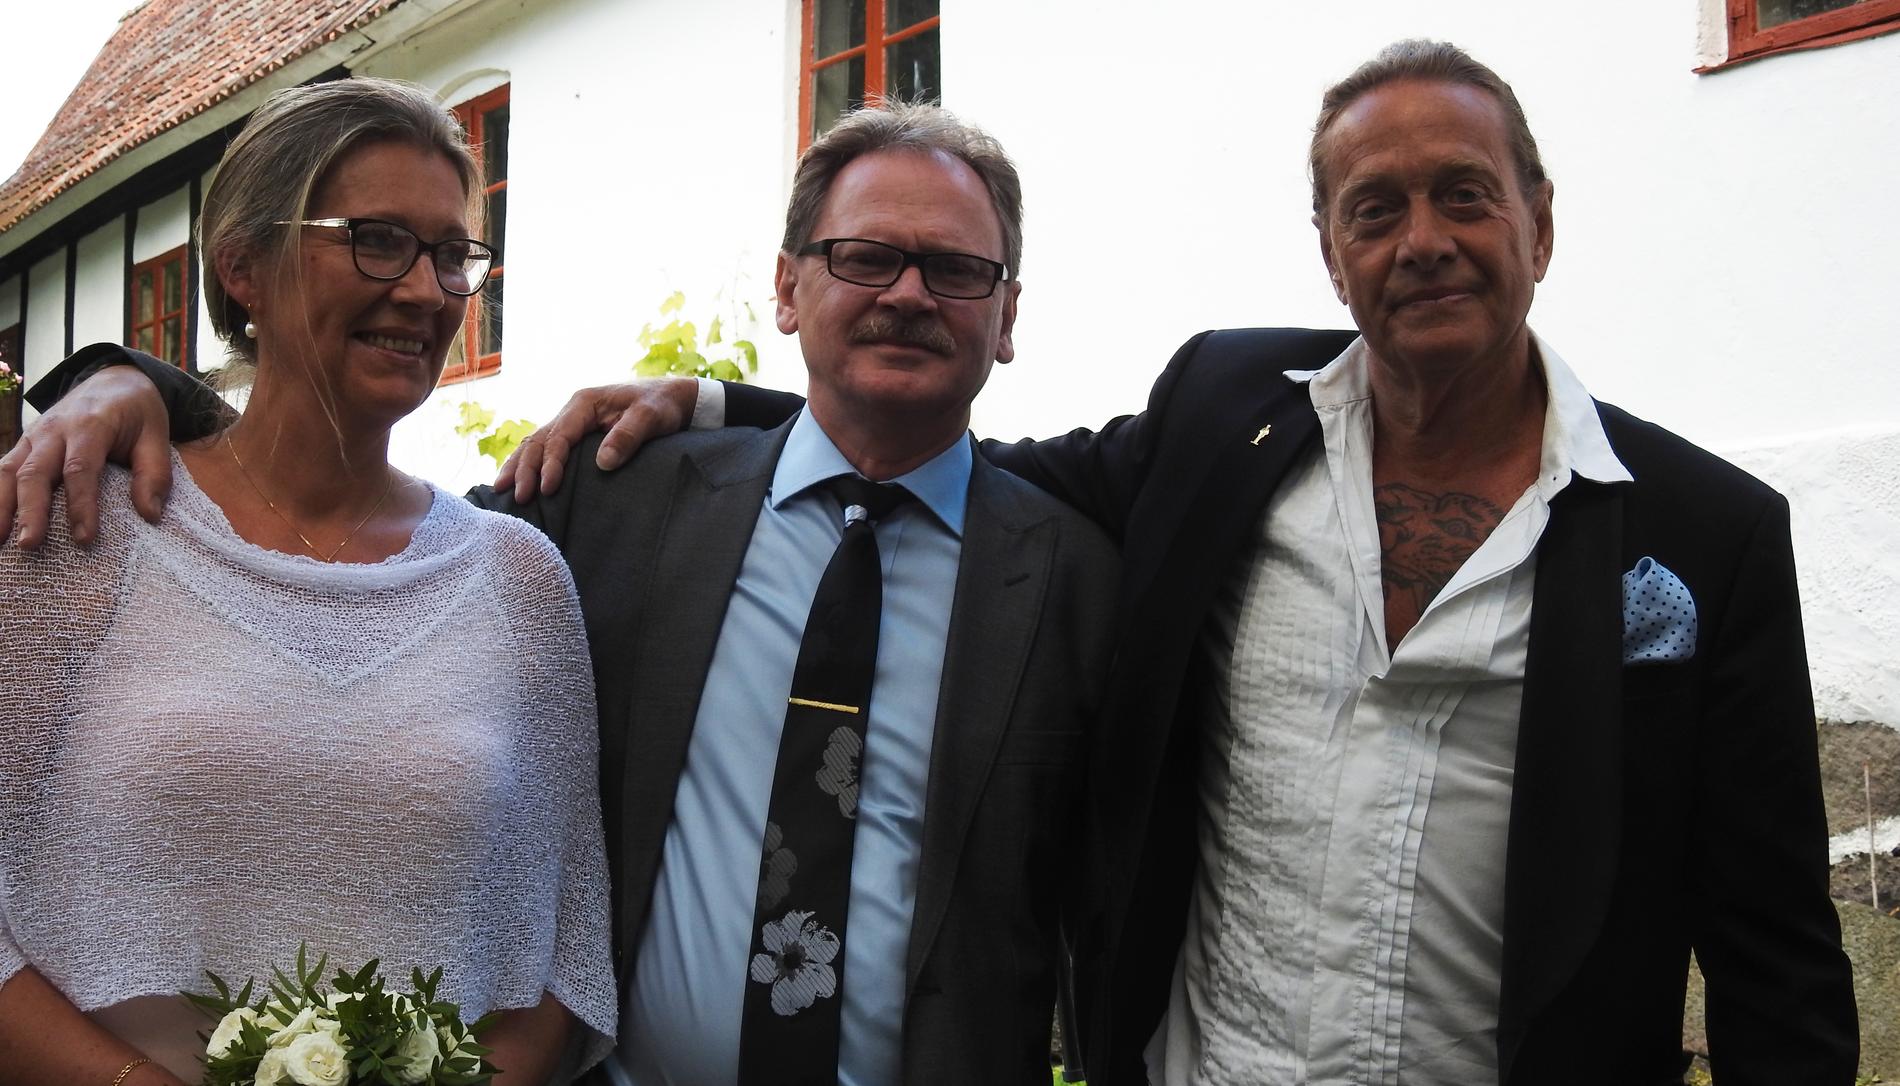 Helena Andersson och Thomas Öberg tillsammans med Björn Ranelid.